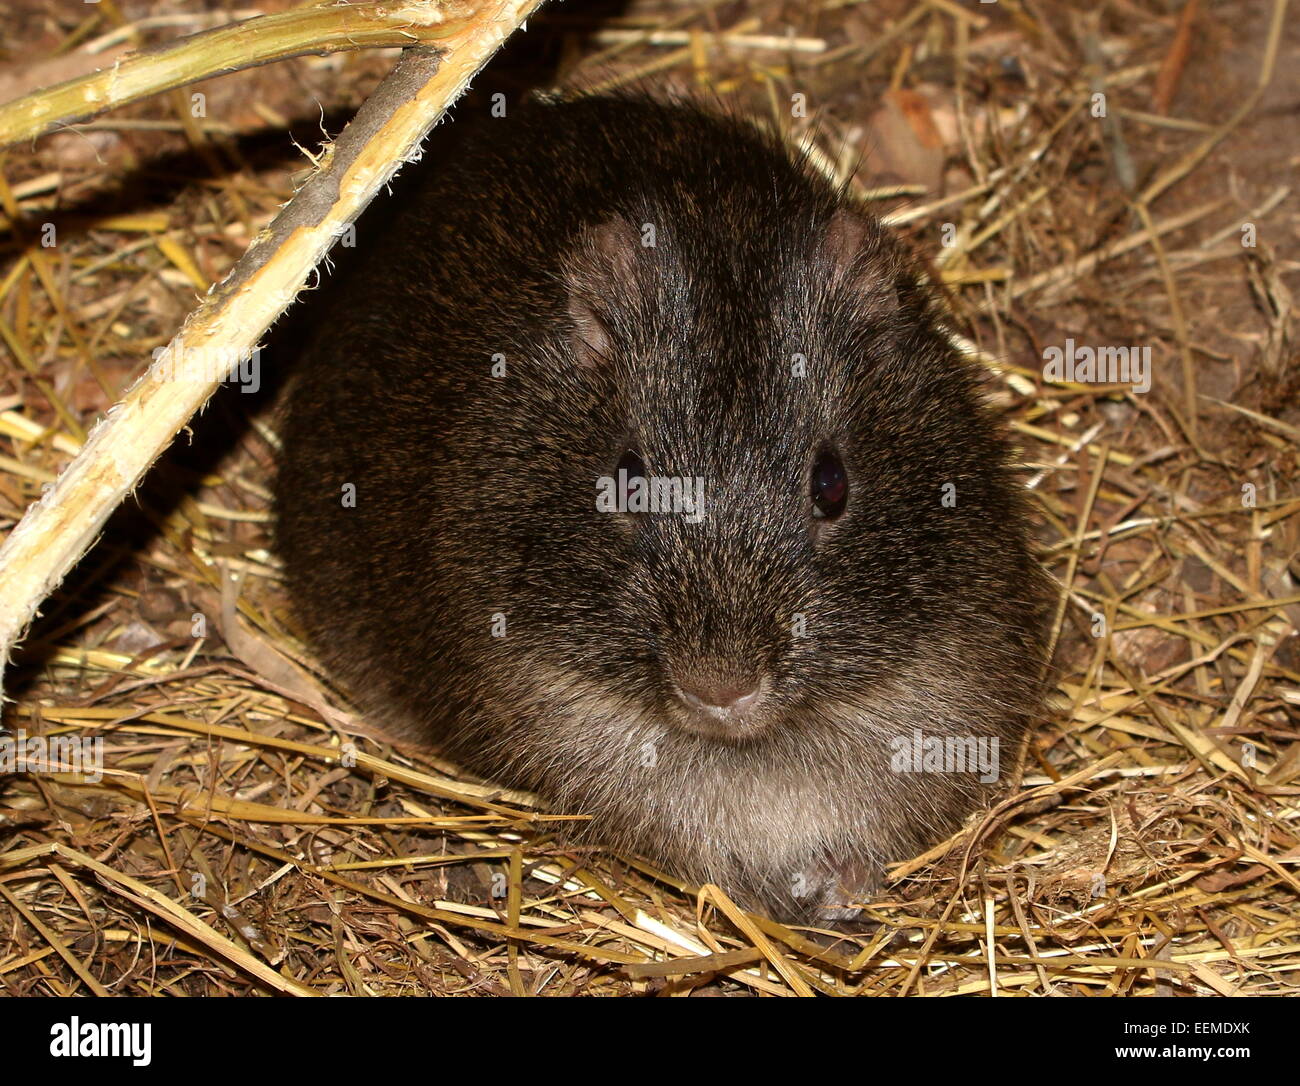 Brazilian wild guinea pig or Preá (Cavia aperea) Stock Photo